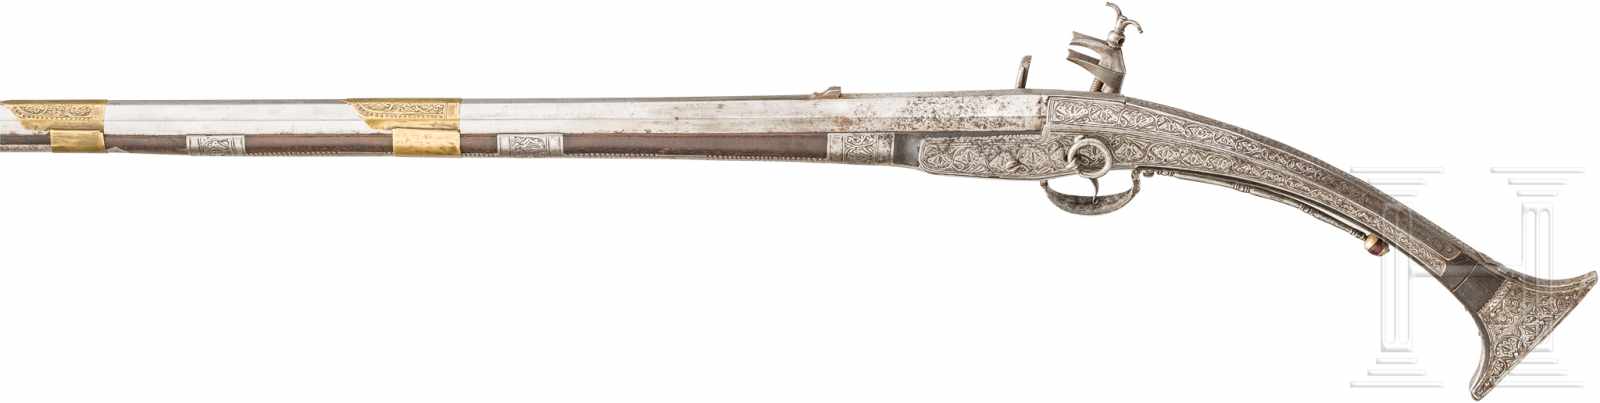 Miqueletgewehr, Albanien, um 1800Schlanker, leicht konischer Achtkantlauf im Kaliber 16 mm mit - Image 2 of 3